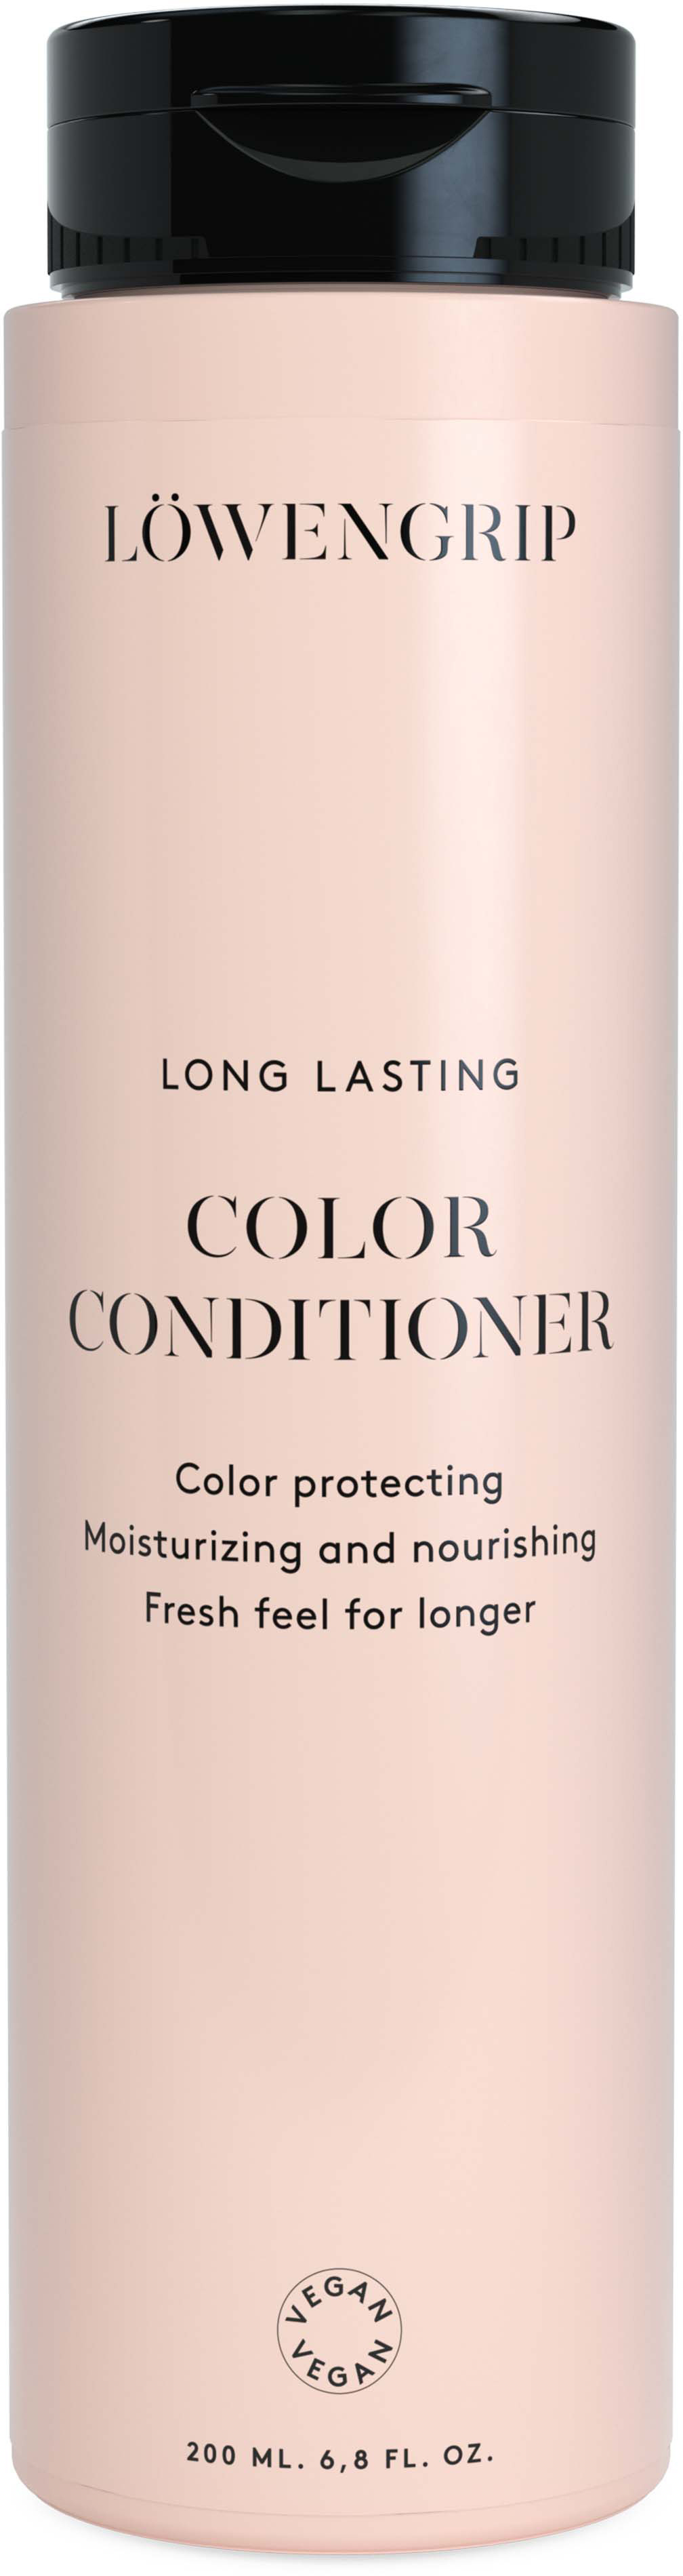 Löwengrip Long Lasting Color Conditioner 200 ml